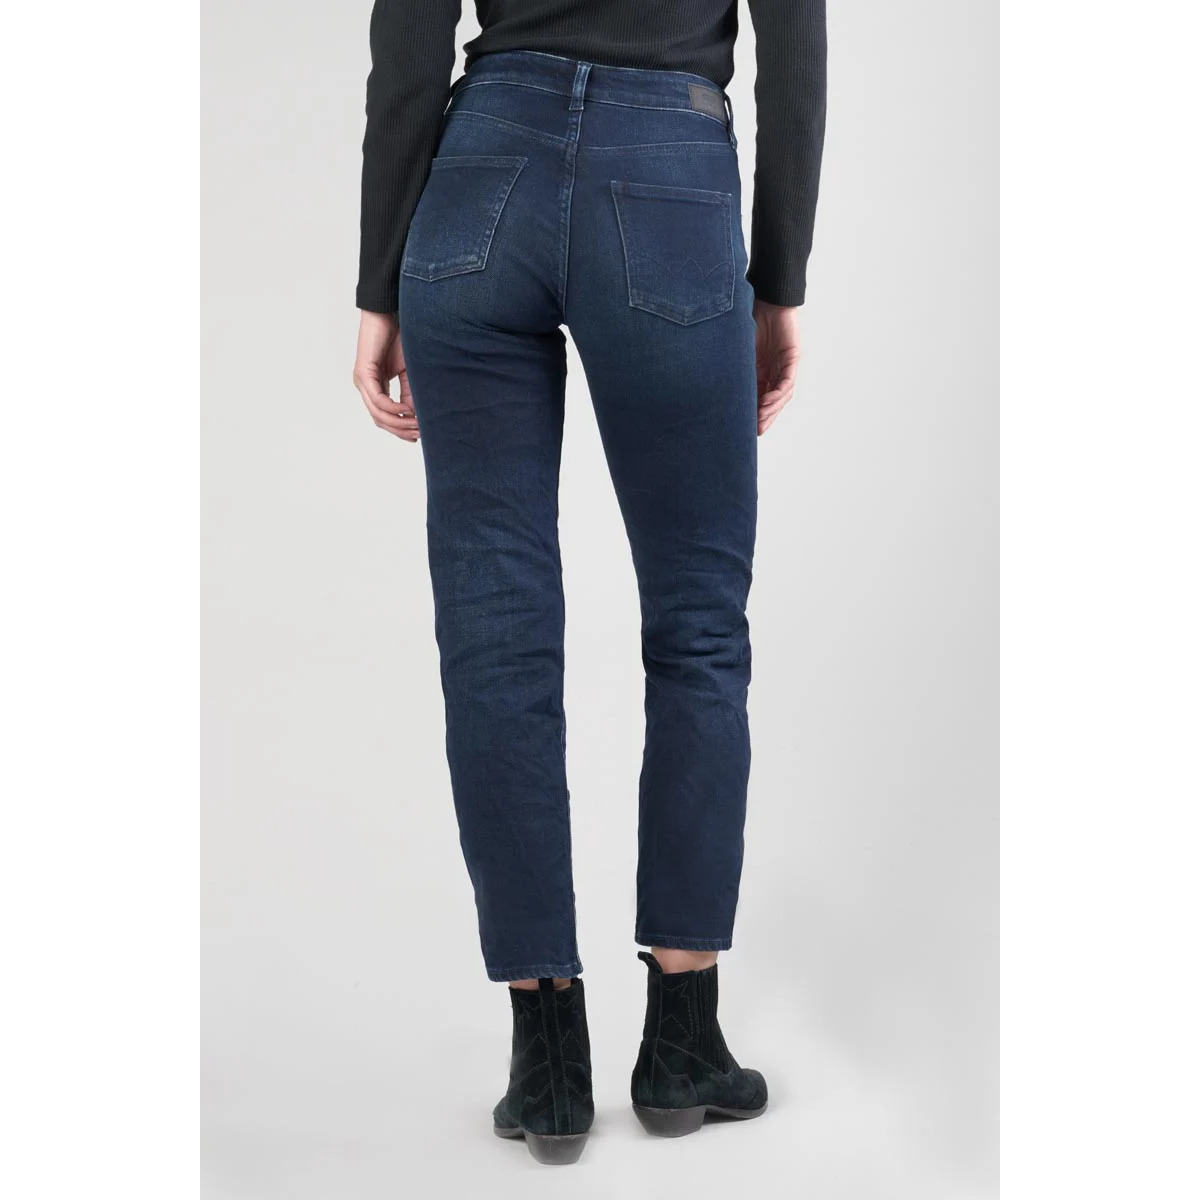 Le Temps des Cerises Bleu Basic 400/17 mom taille haute 7/8ème jeans bleu-noir XWzJjB0b